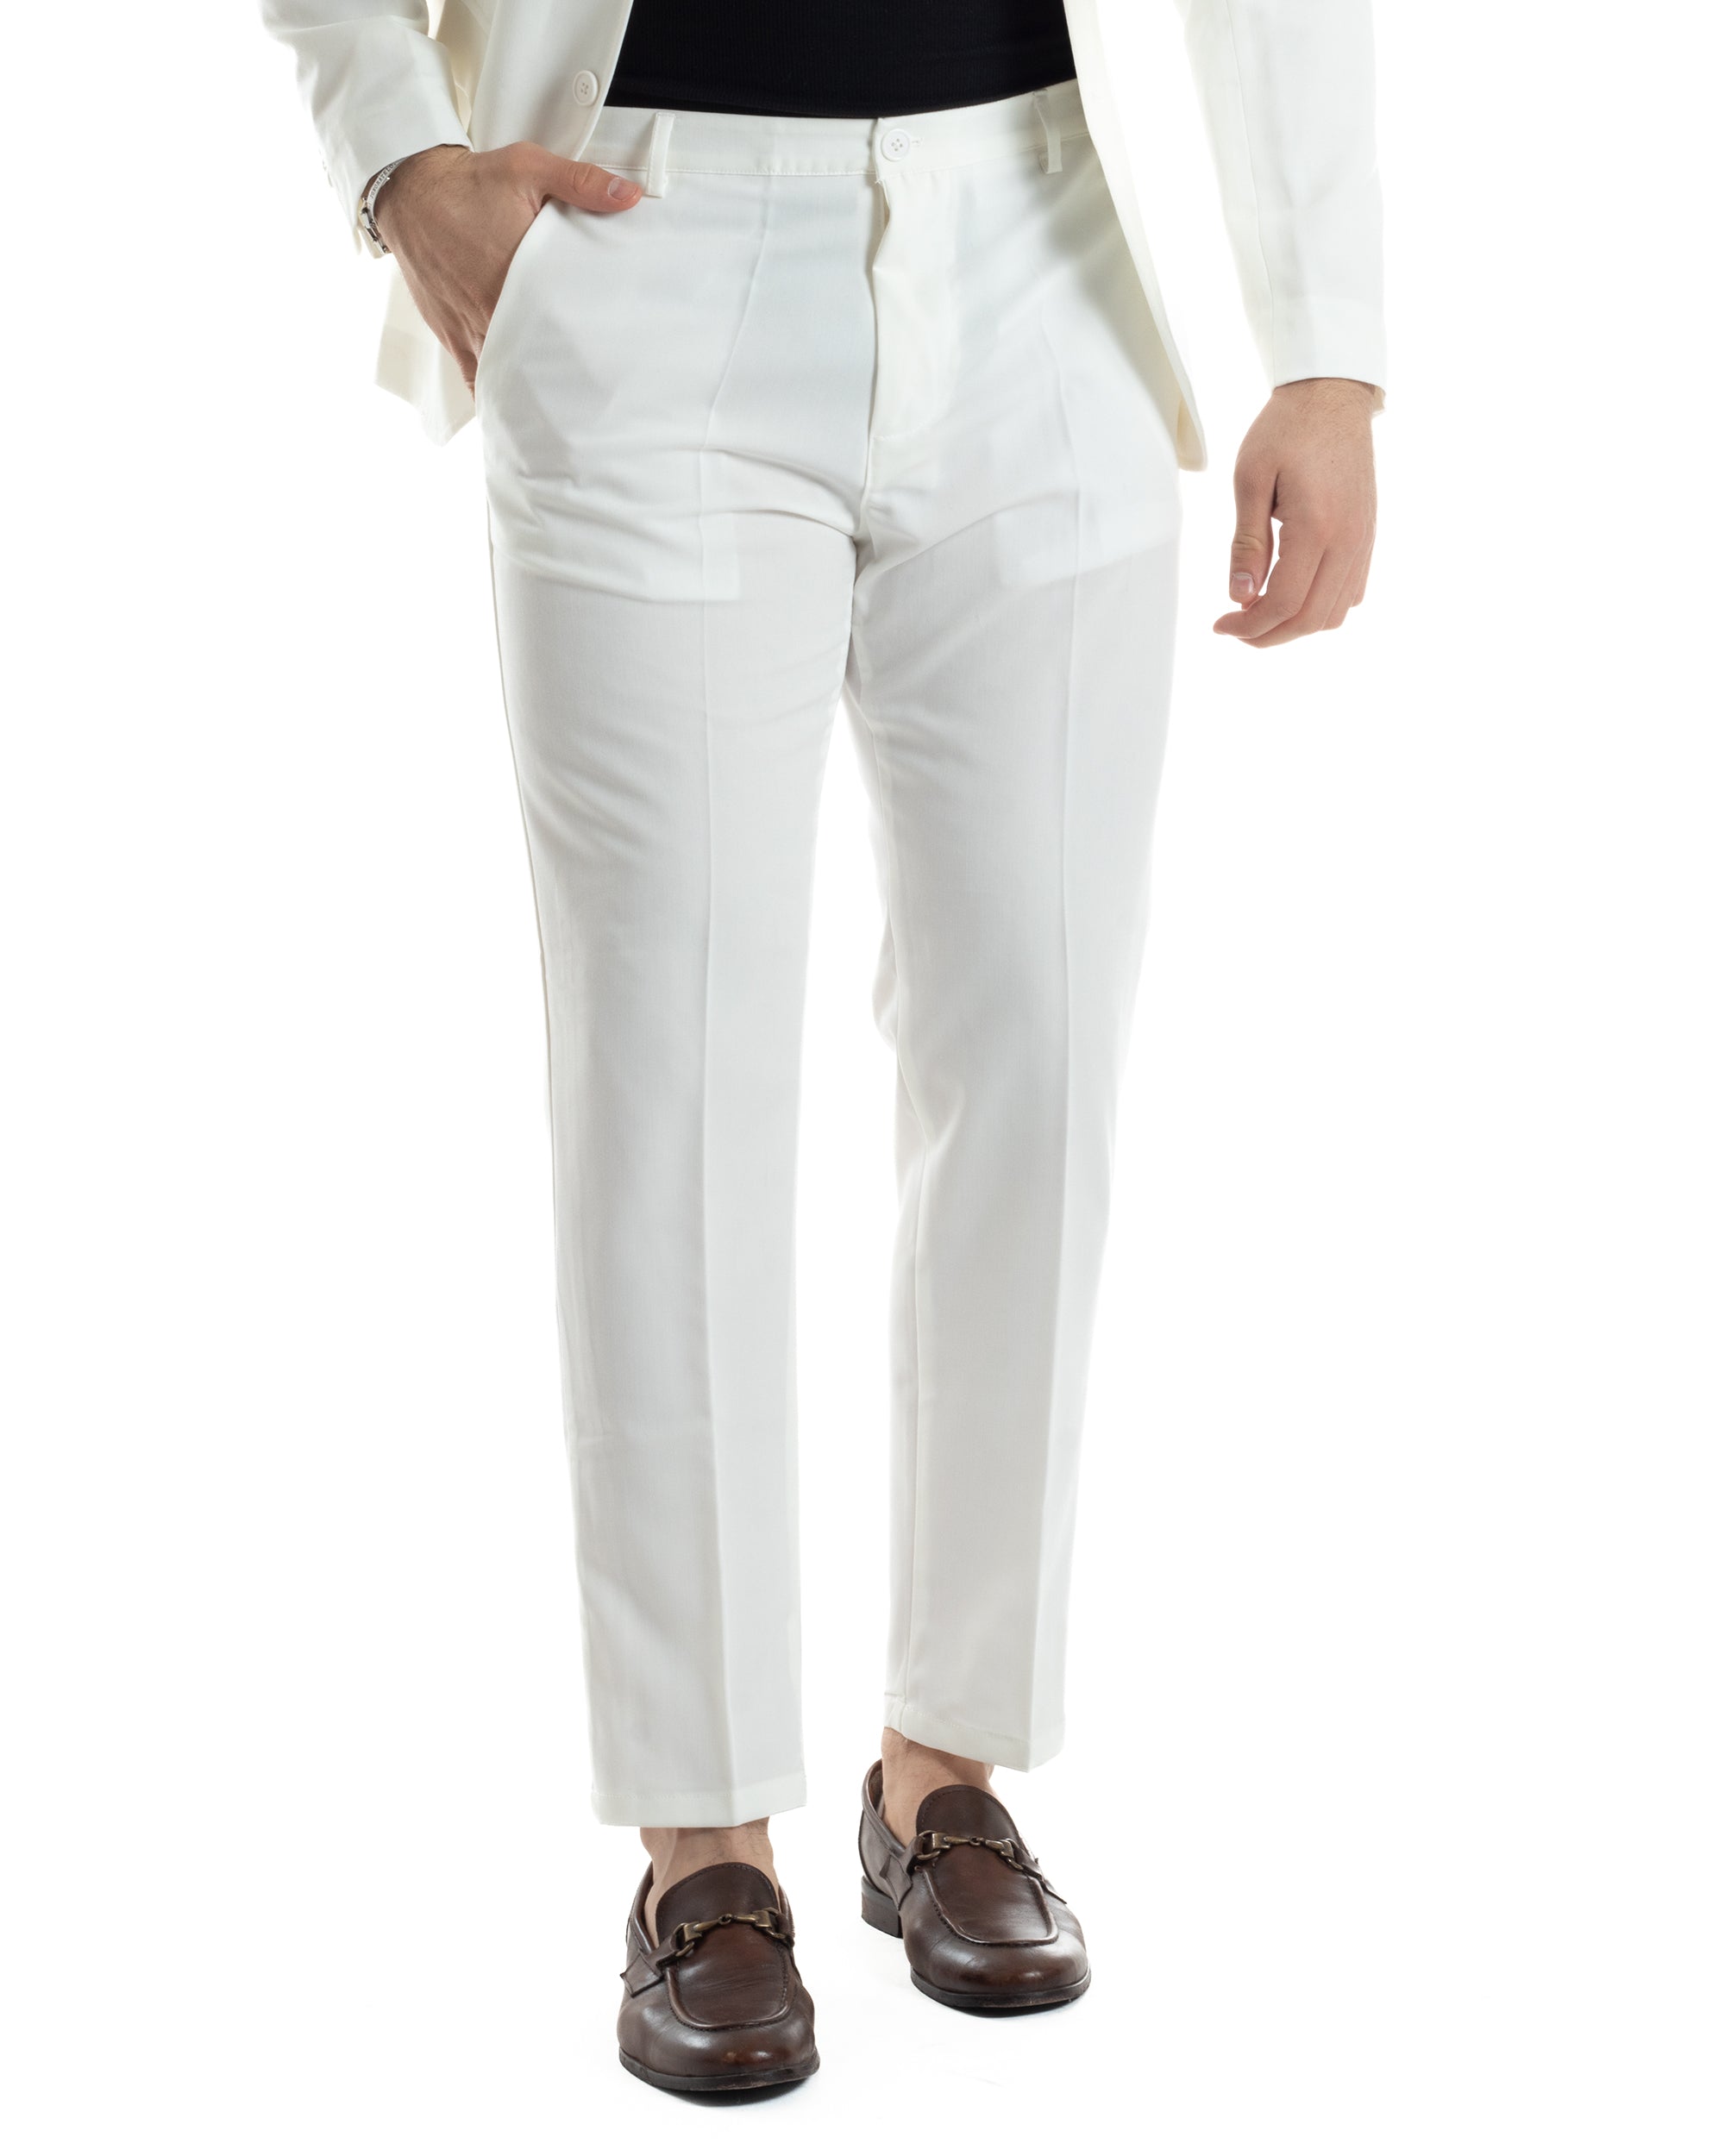 Abito Uomo Monopetto Vestito Completo Giacca Pantaloni Bianco Tinta Unita Elegante Casual GIOSAL-AE1035A